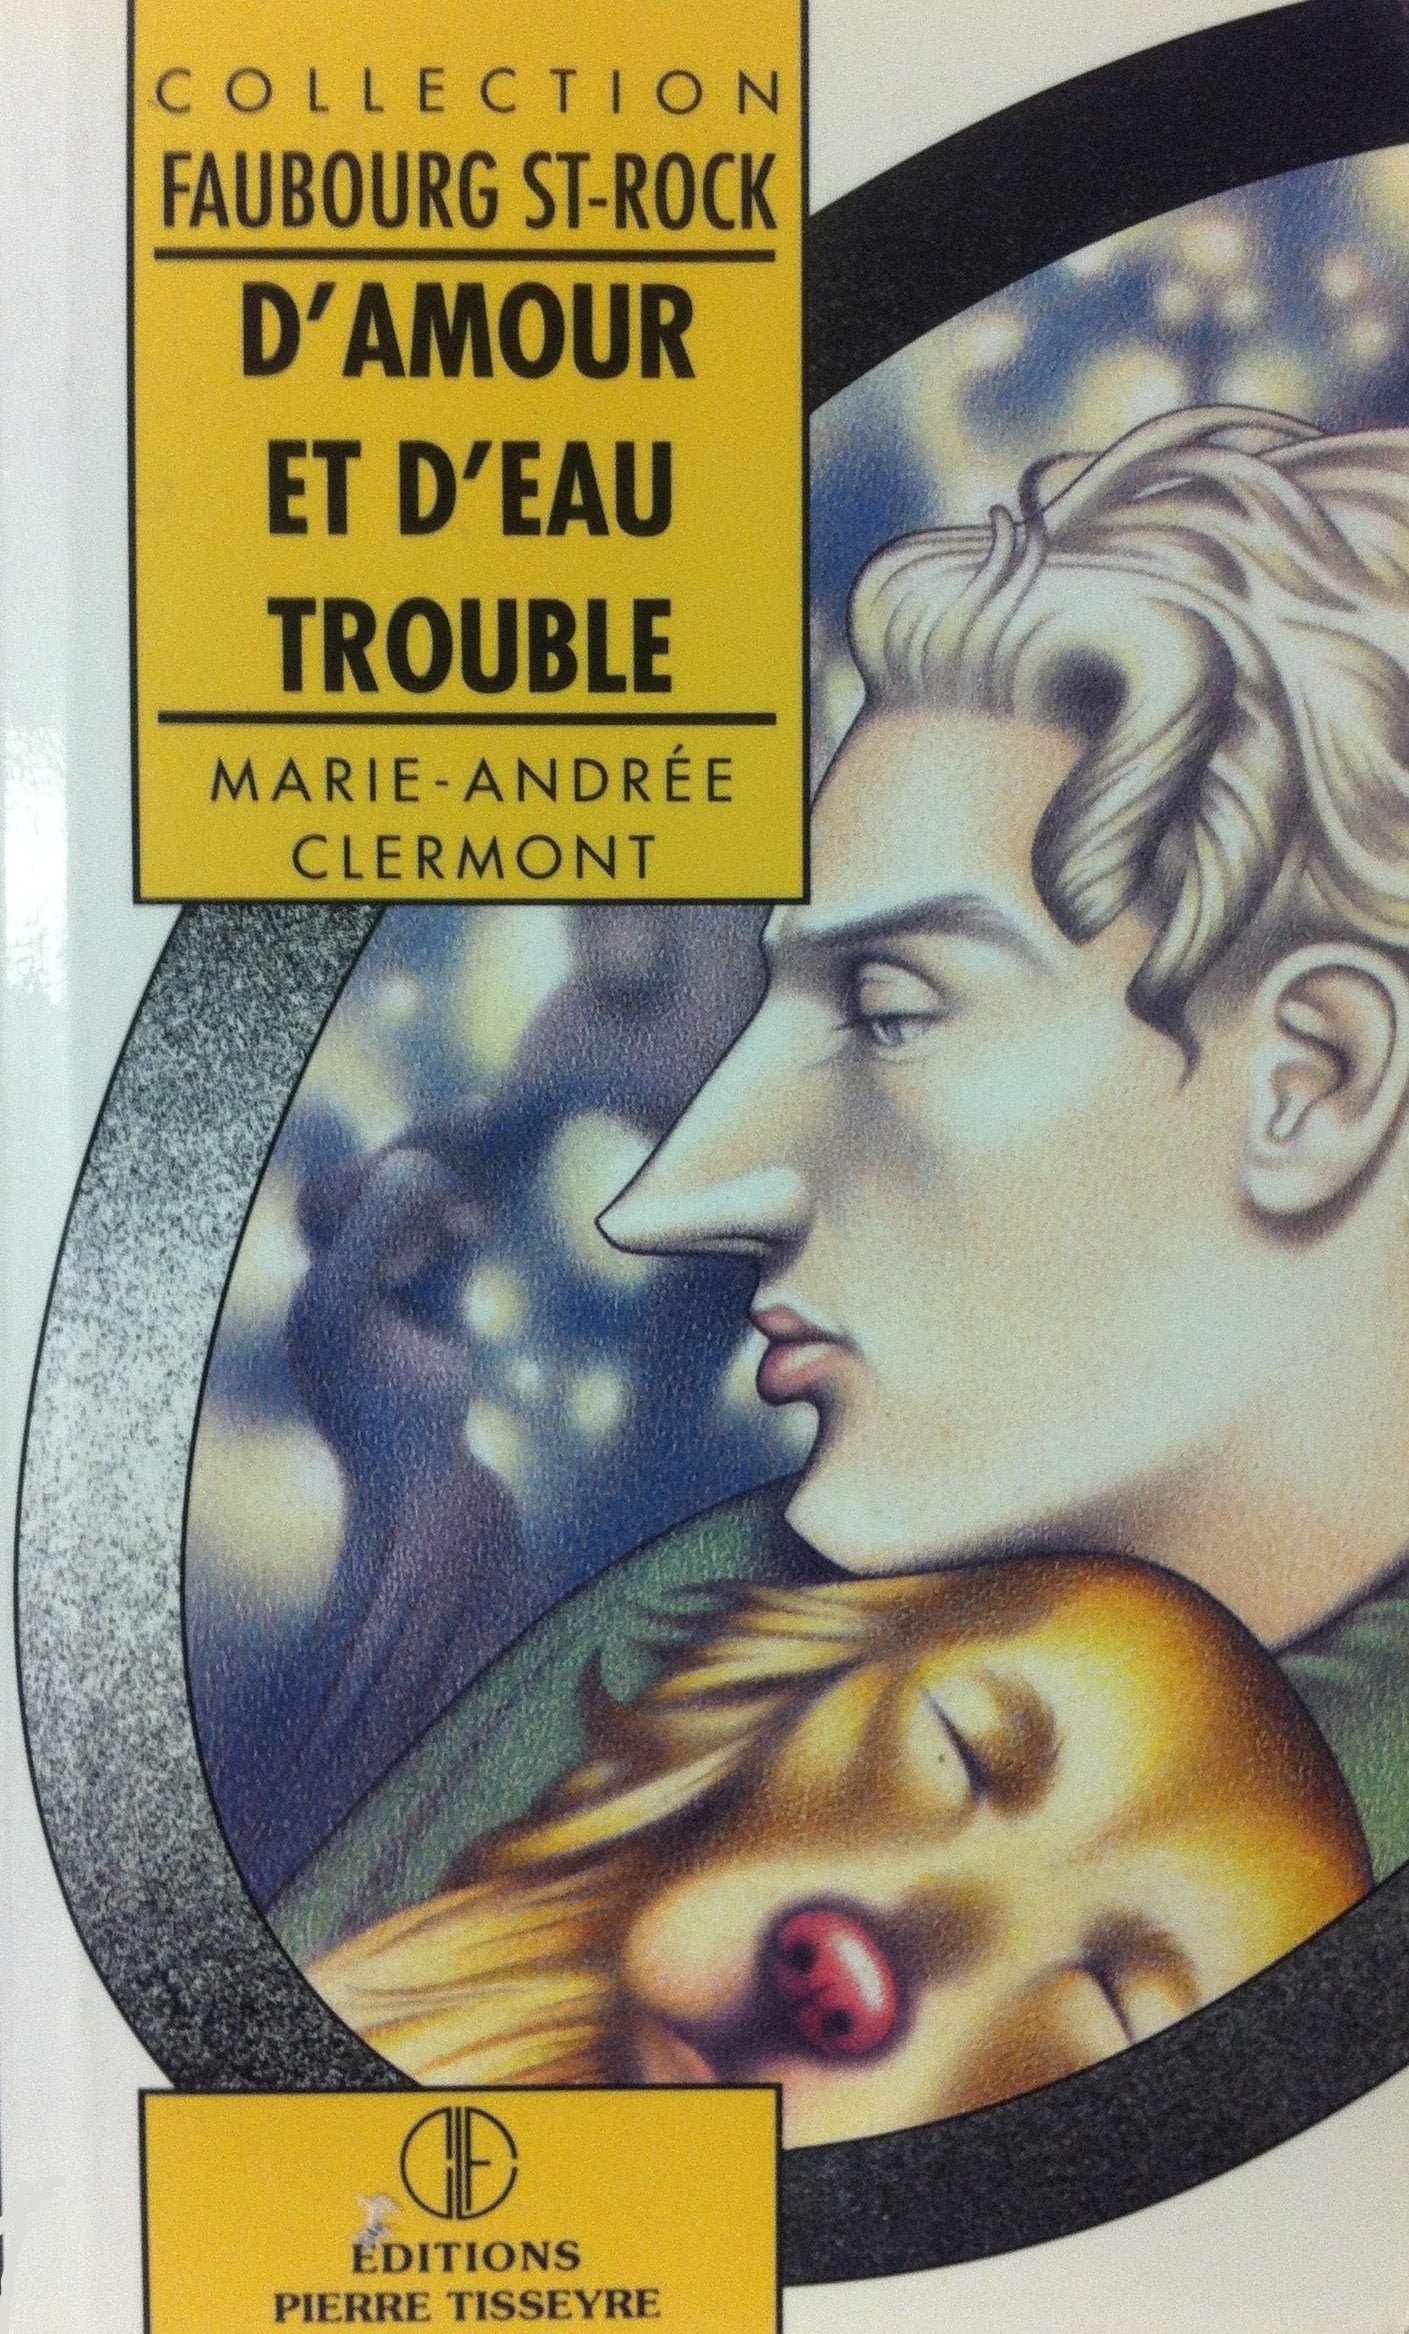 Livre ISBN 2890515605 Faubourg St-Roch : D'amour et d'eau trouble (Marie-Andrée Clermont)